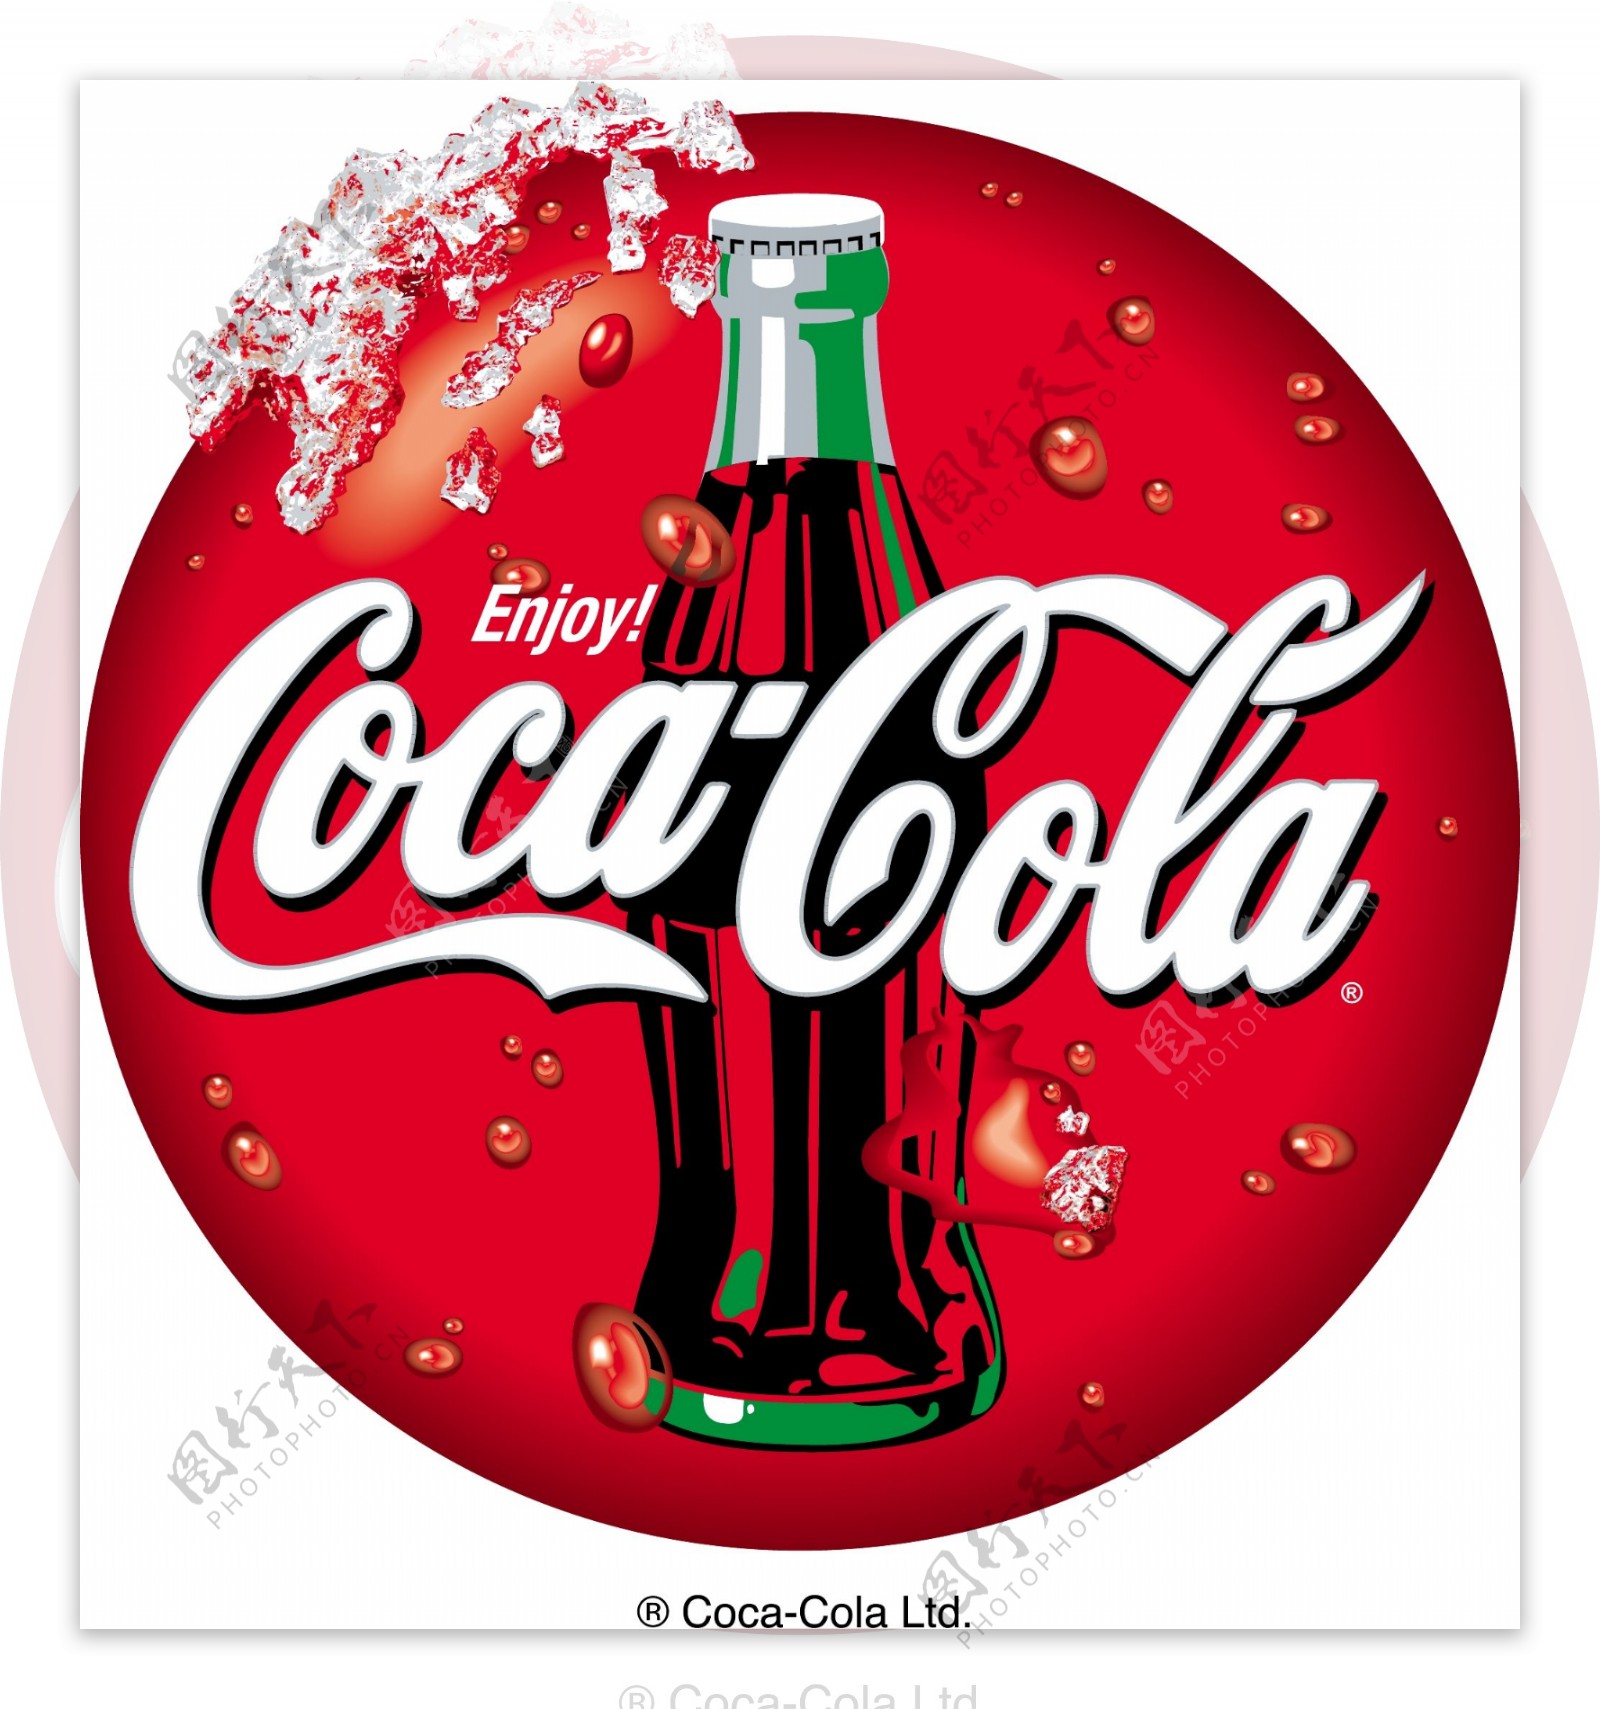 可口可乐Logo5